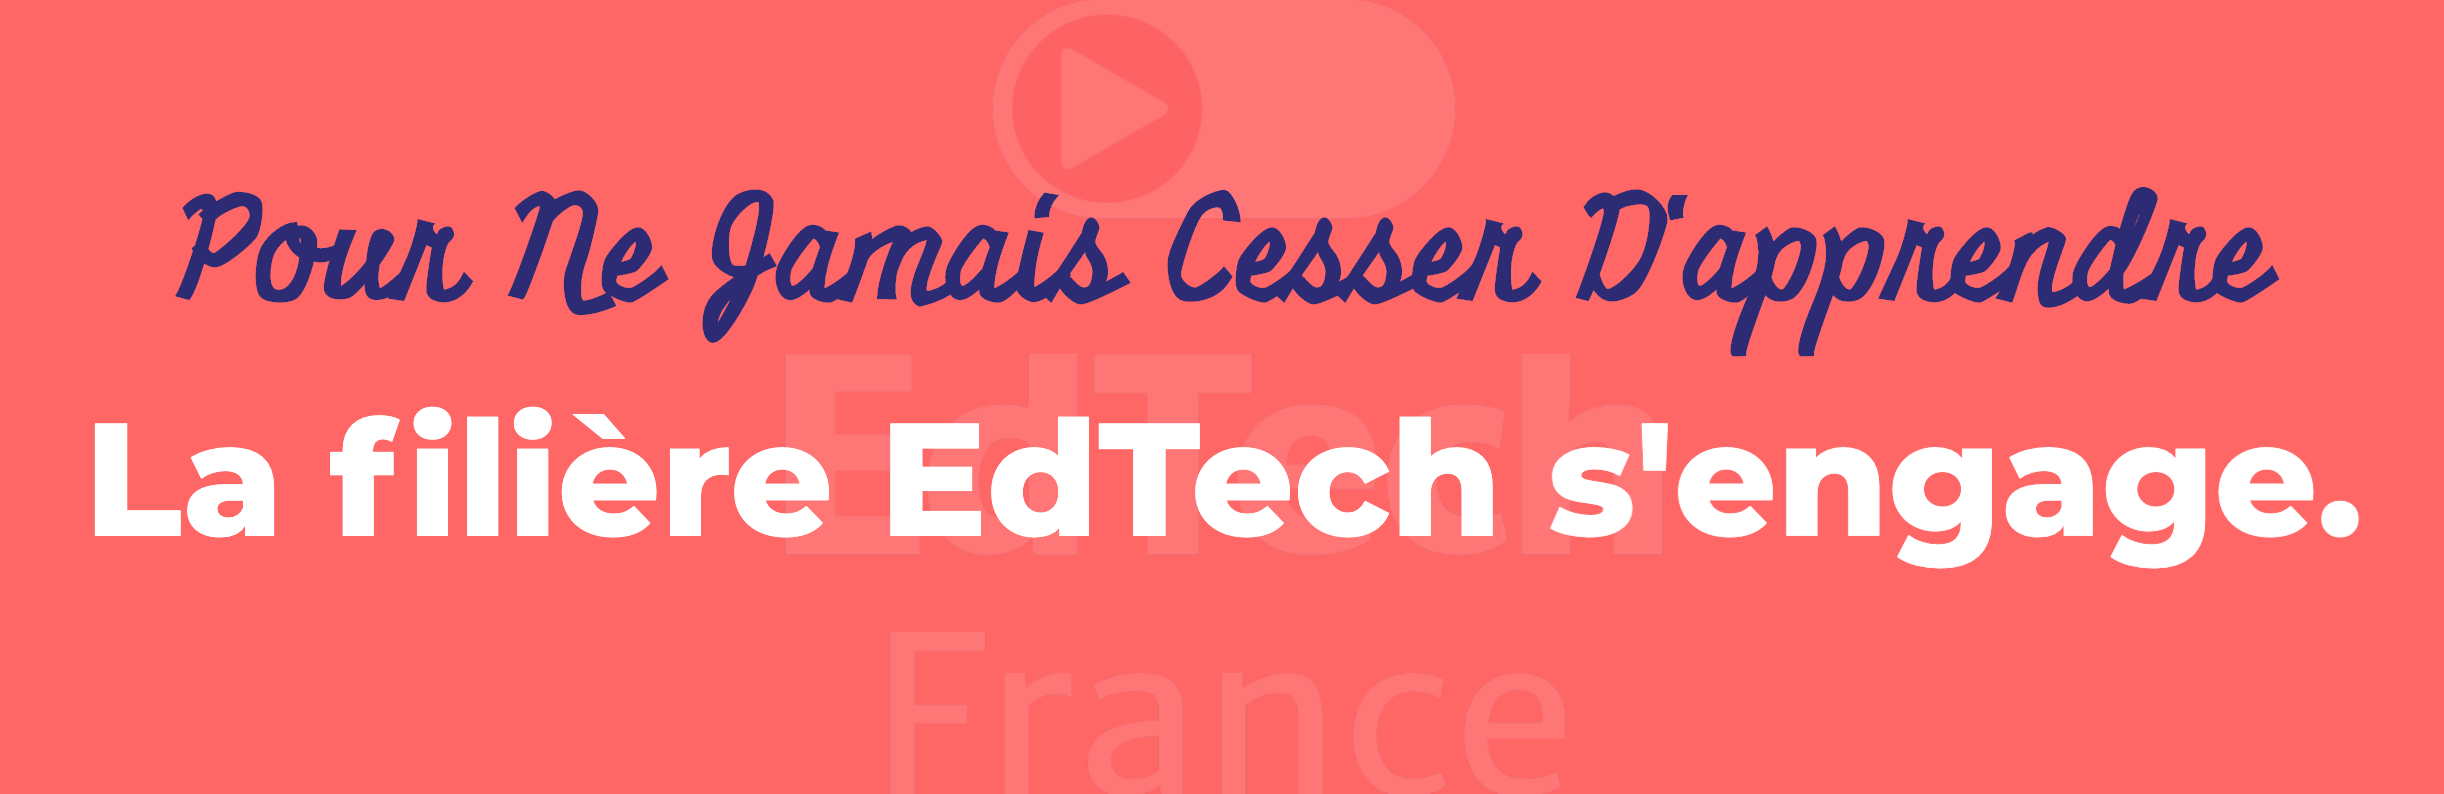 Pour Ne Jamais Cesser D’apprendre La filière EdTech s’engage . solidaire — EdTech France